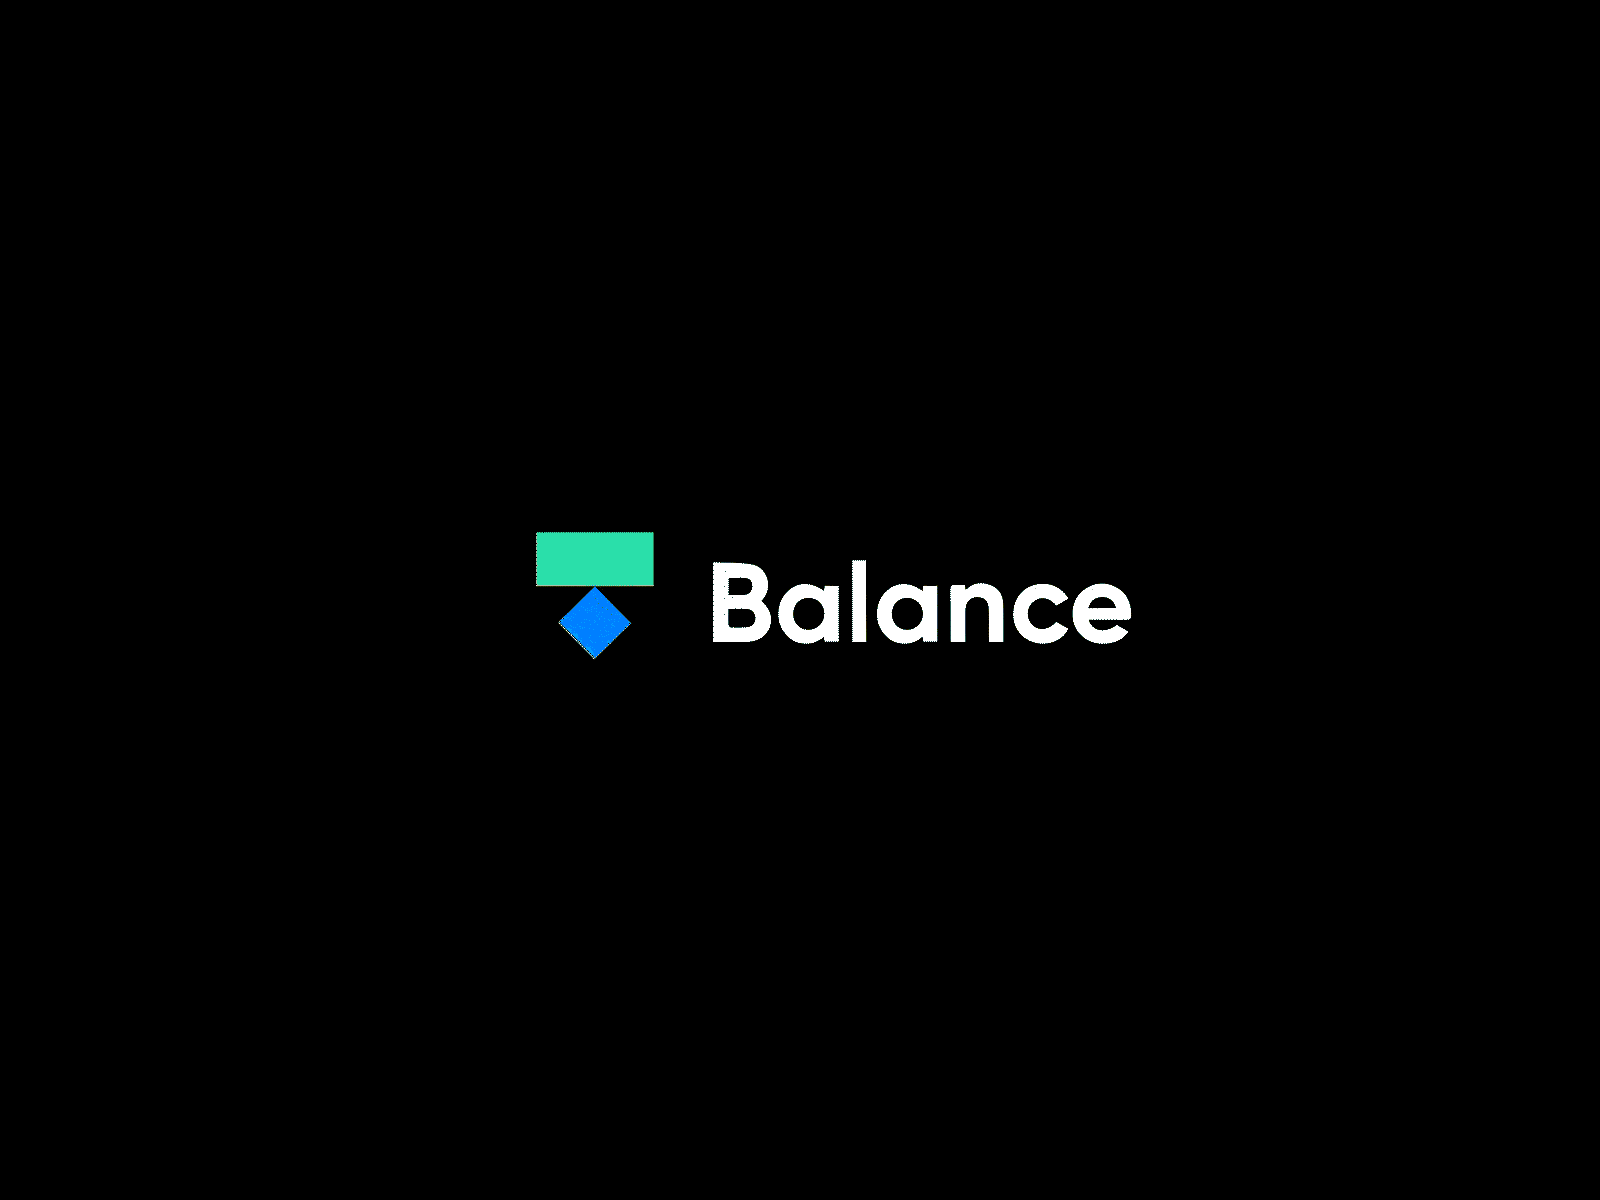 "Balance" Logo Animation animation app application branding design logo logo animation logo design logo motion logomotion lottie motion motion graphics motiondesign ui